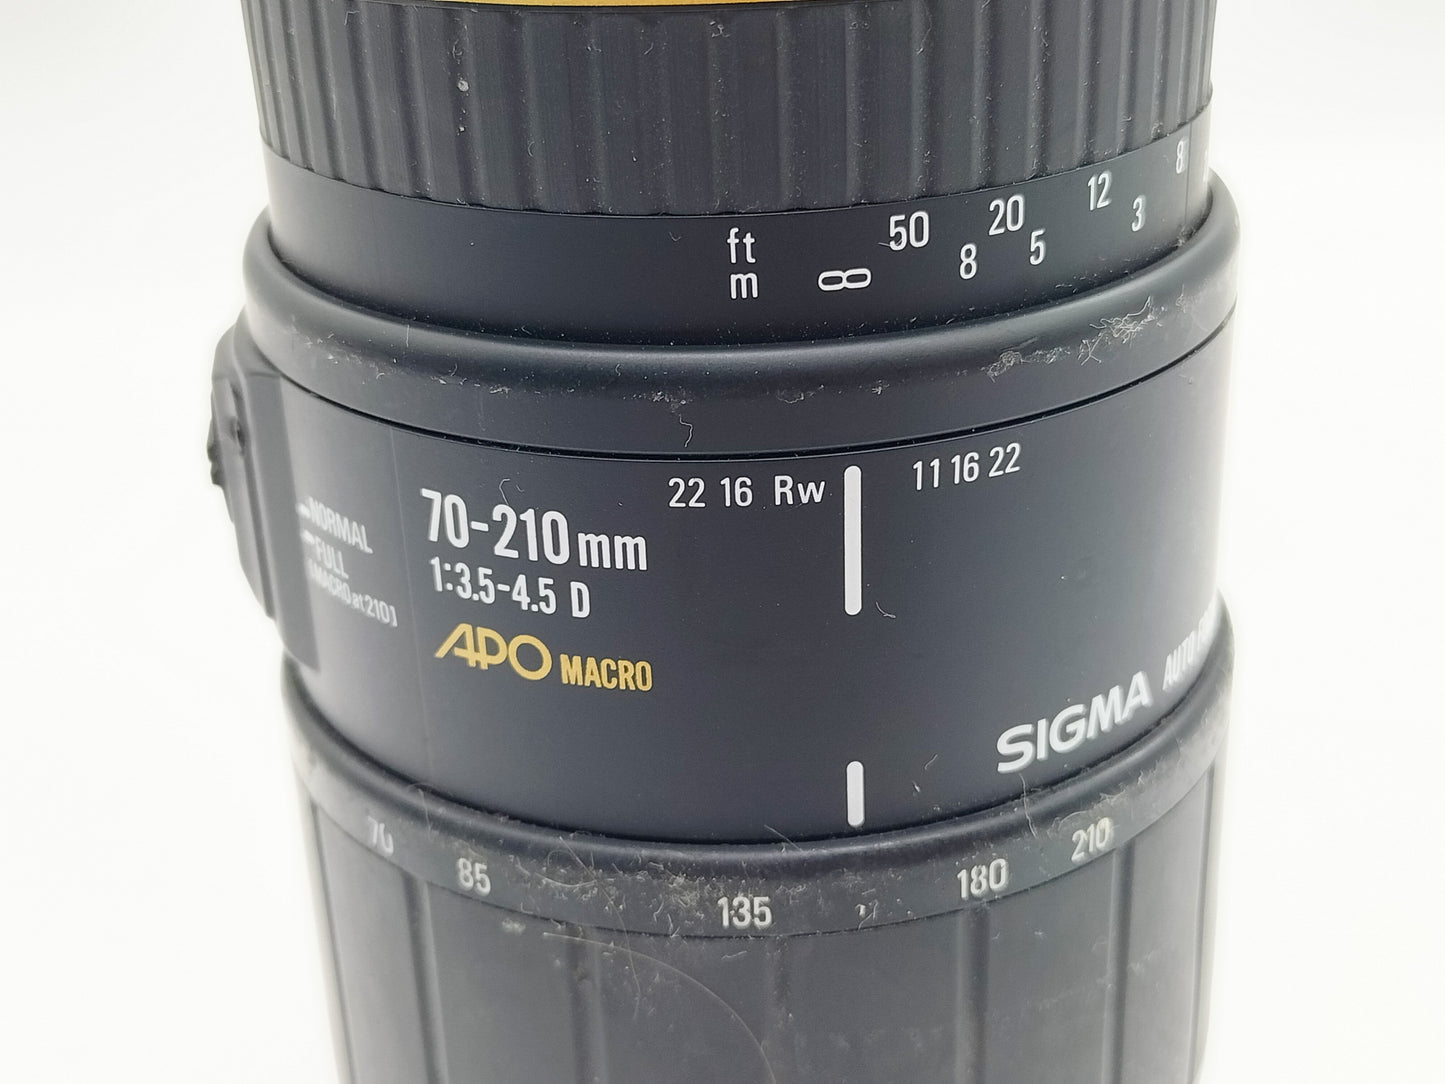 Sigma 70-210mm Autofocus APO Macro f/3.5 lens